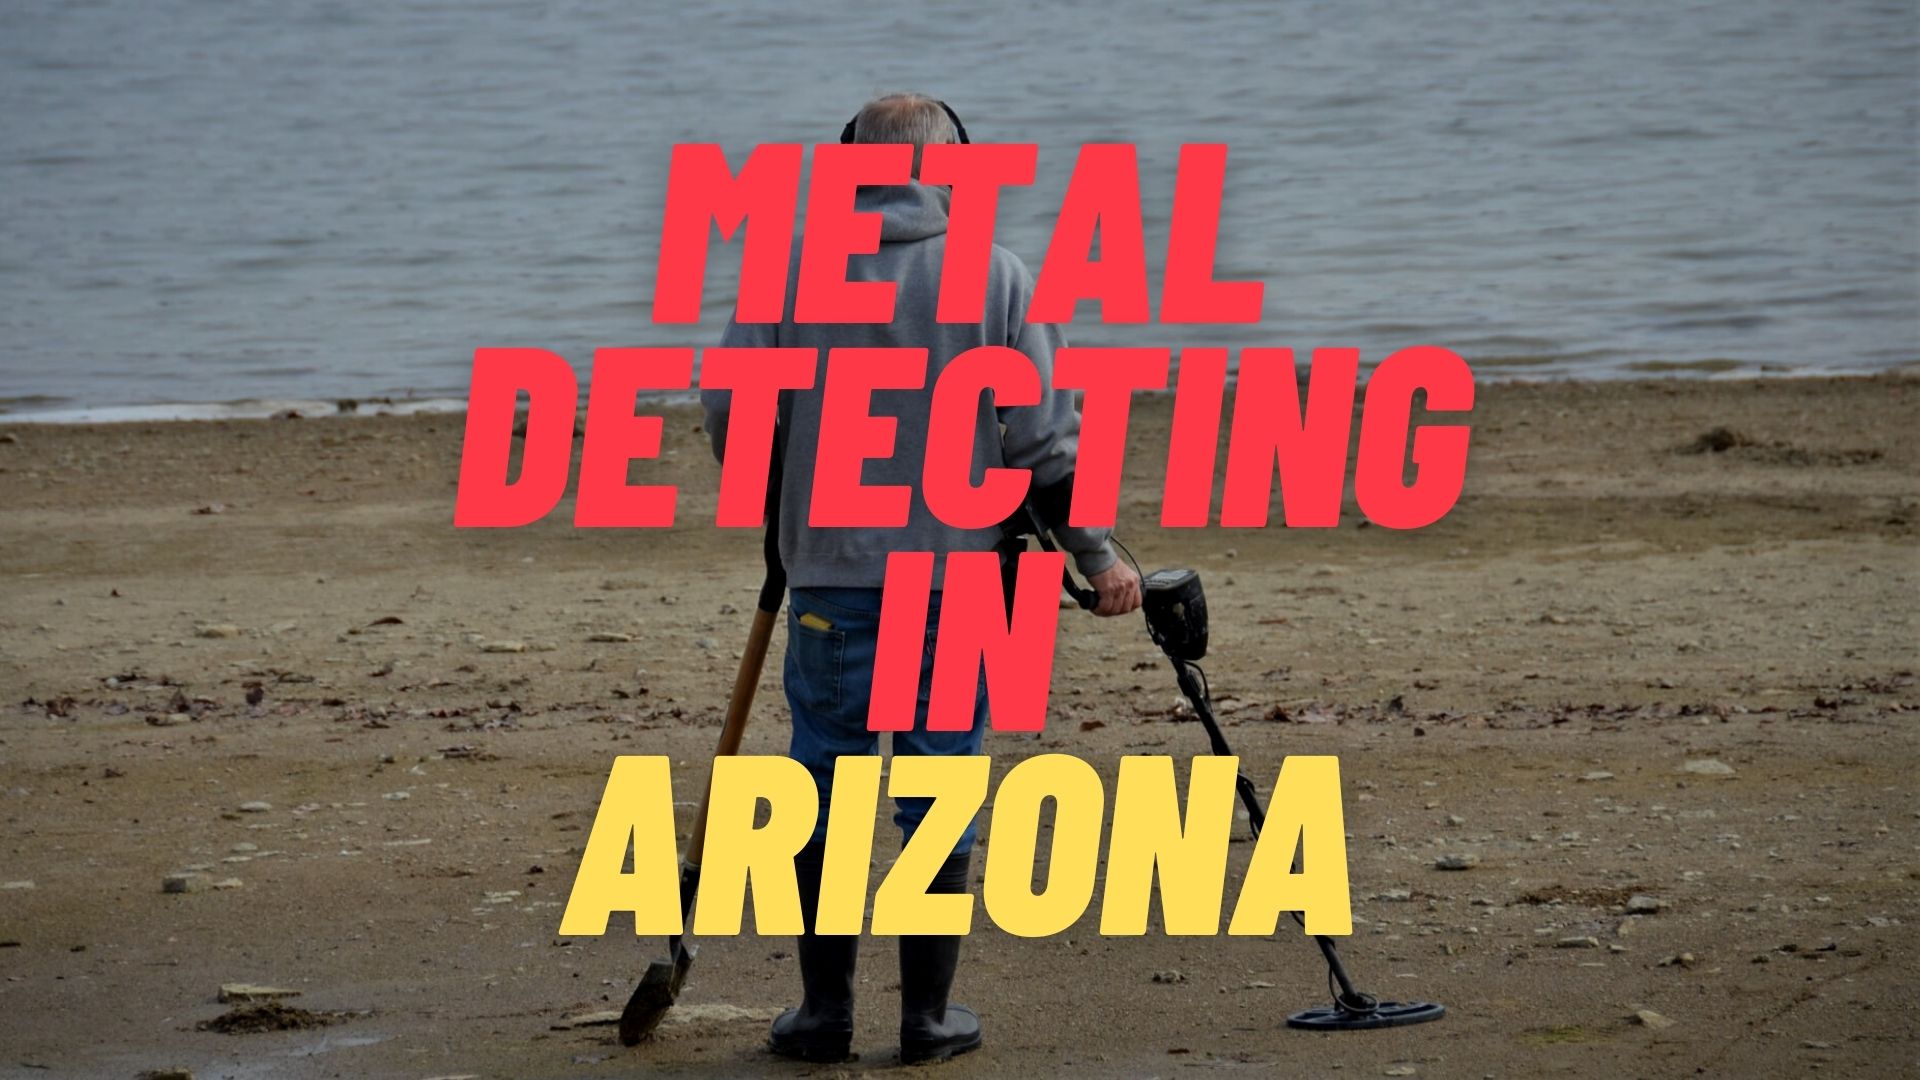 Metal Detecting in Arizona